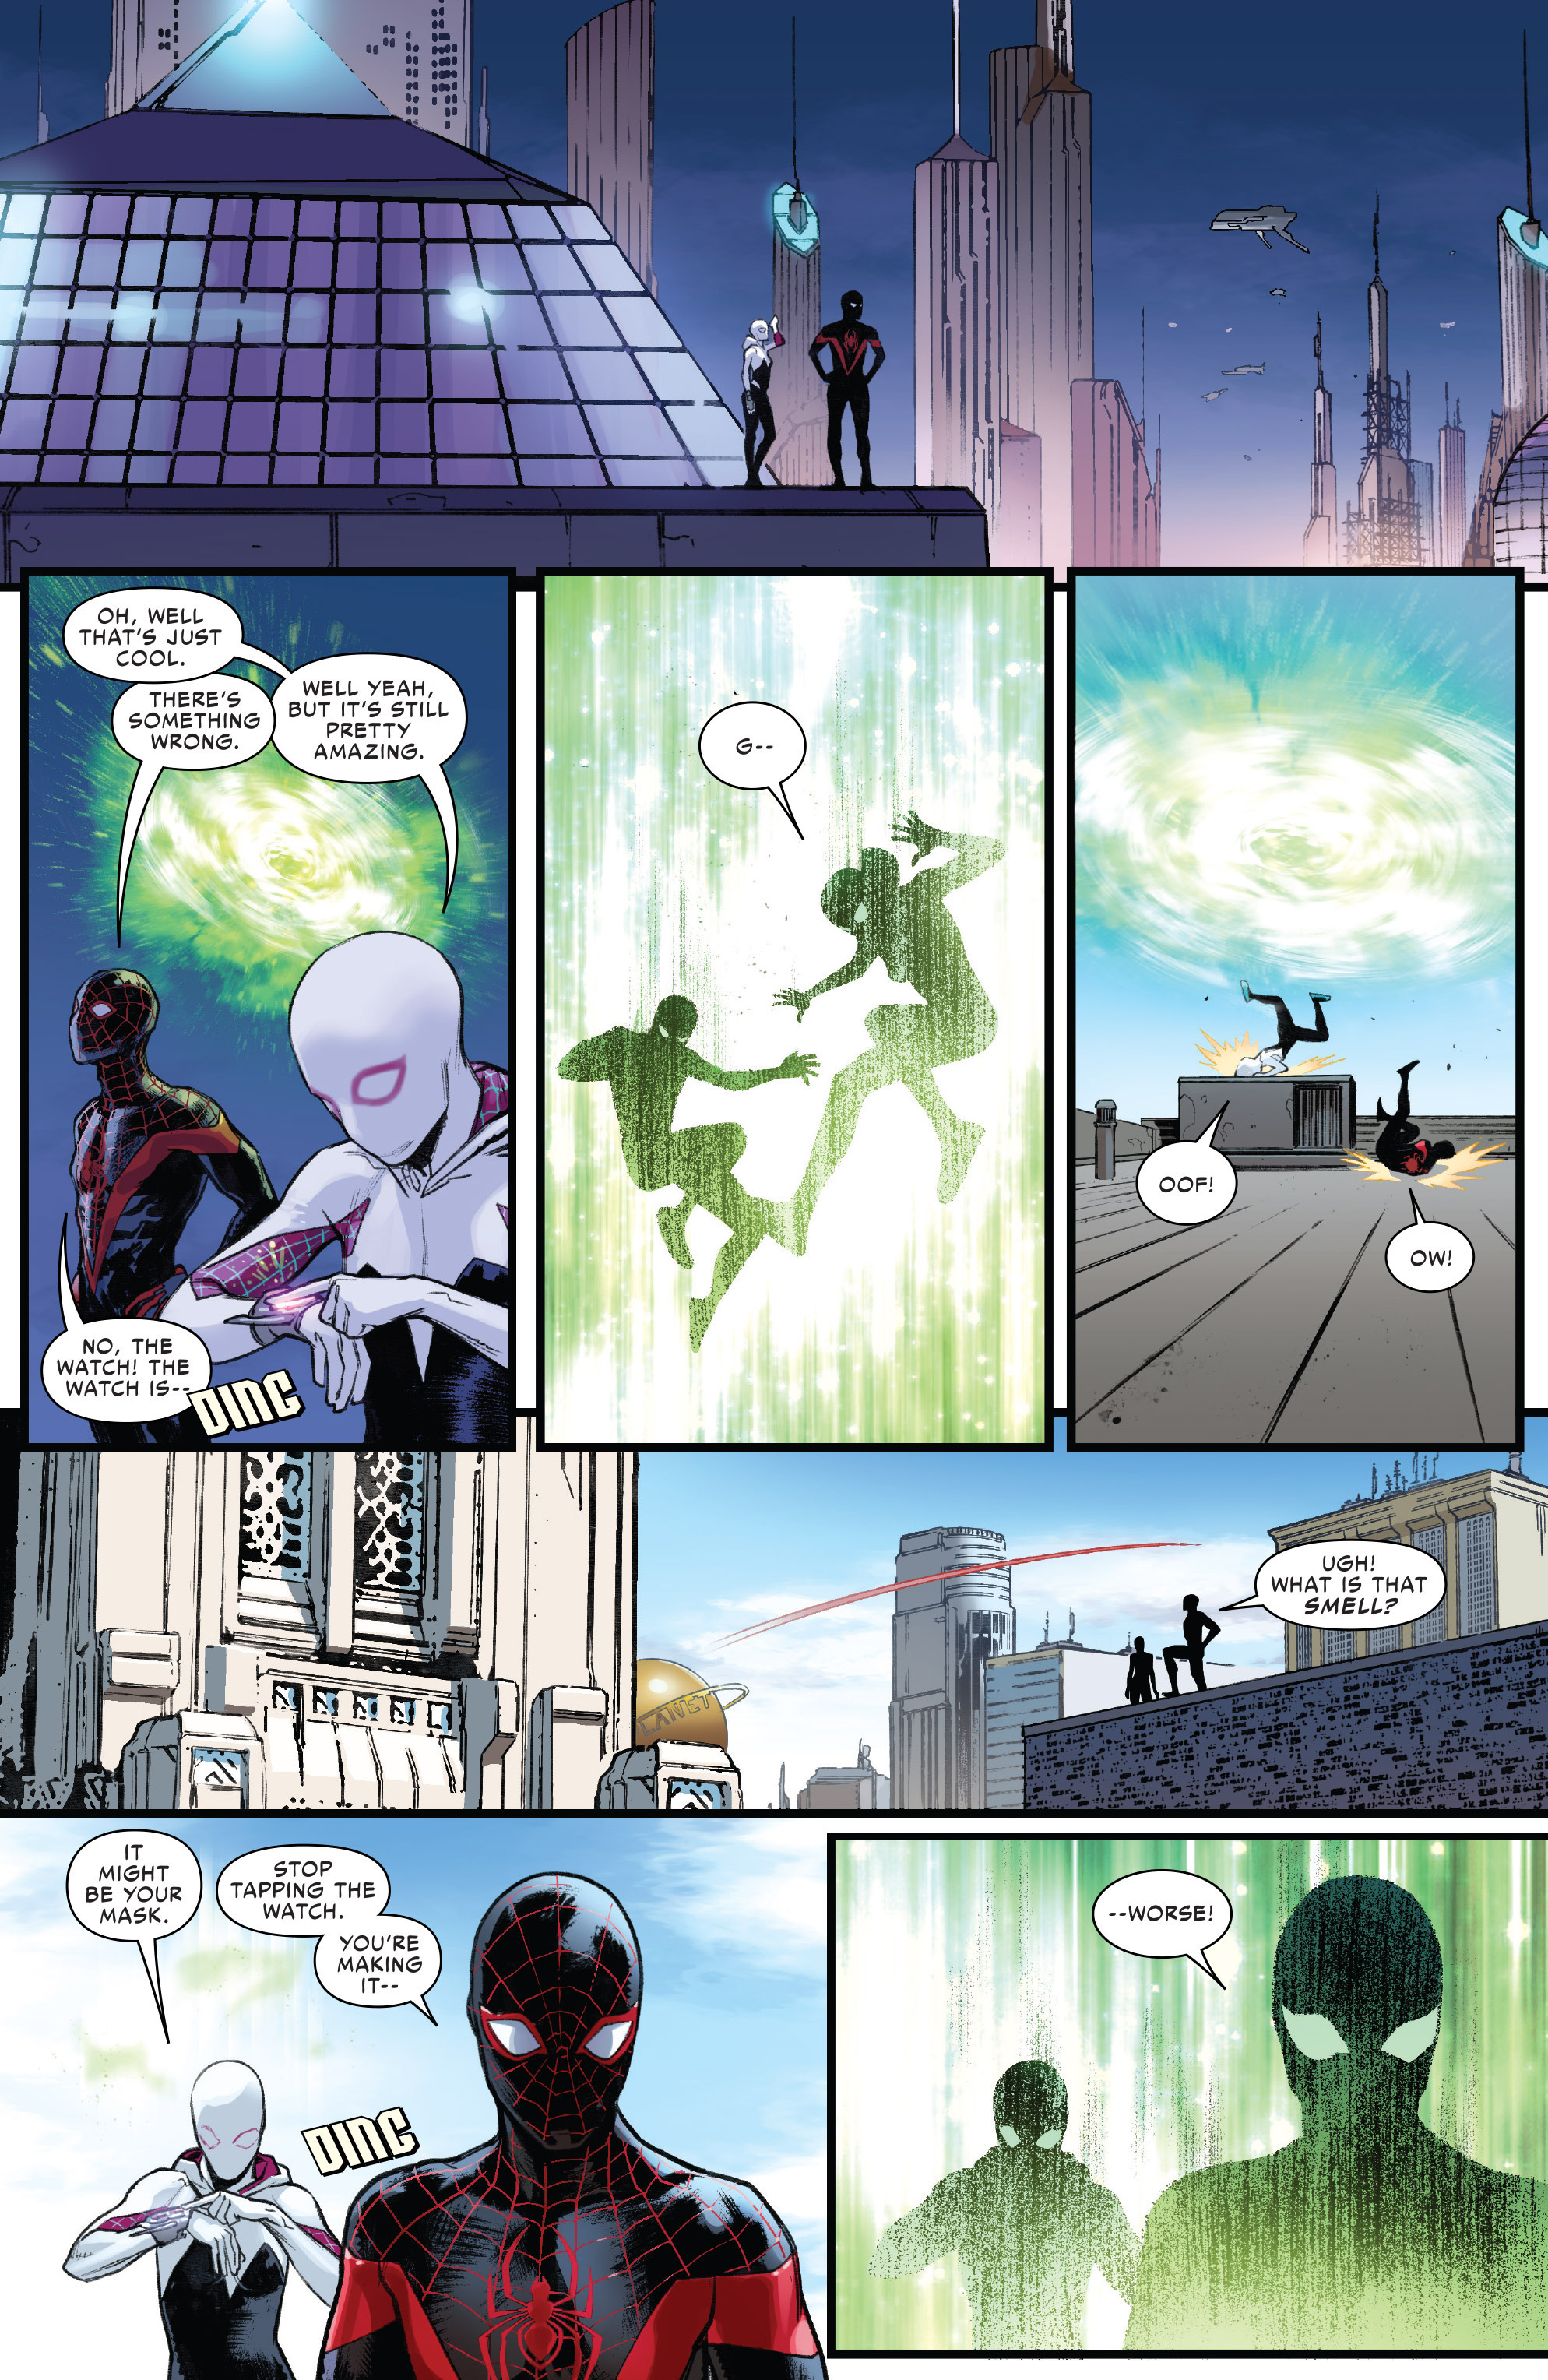 Bàn luận: Các siêu anh hùng Speedster của DC liệu có thực sự sẽ “hết xăng” khi ở vũ trụ Marvel? - Ảnh 10.